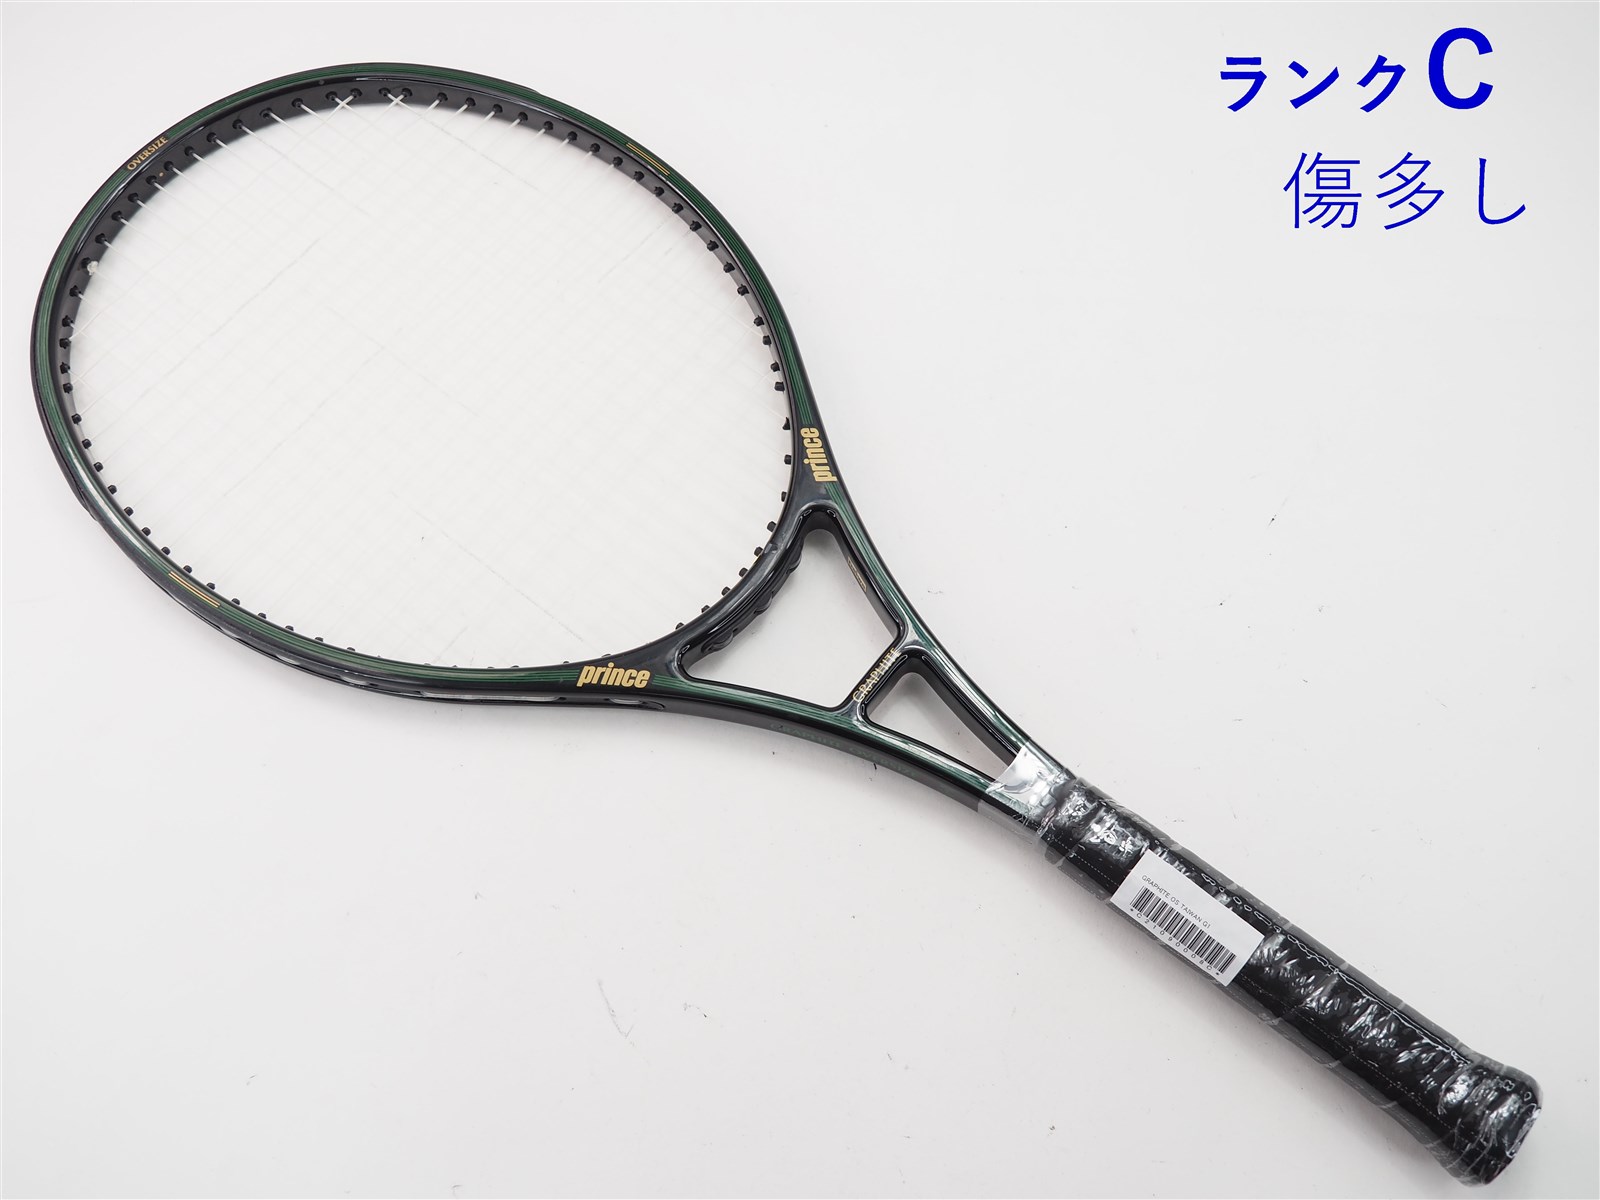 【中古】プリンス グラファイト OS 台湾製4本ラインPRINCE GRAPHITE OS TAIWAN(G1)【中古 テニスラケット】【送料無料】